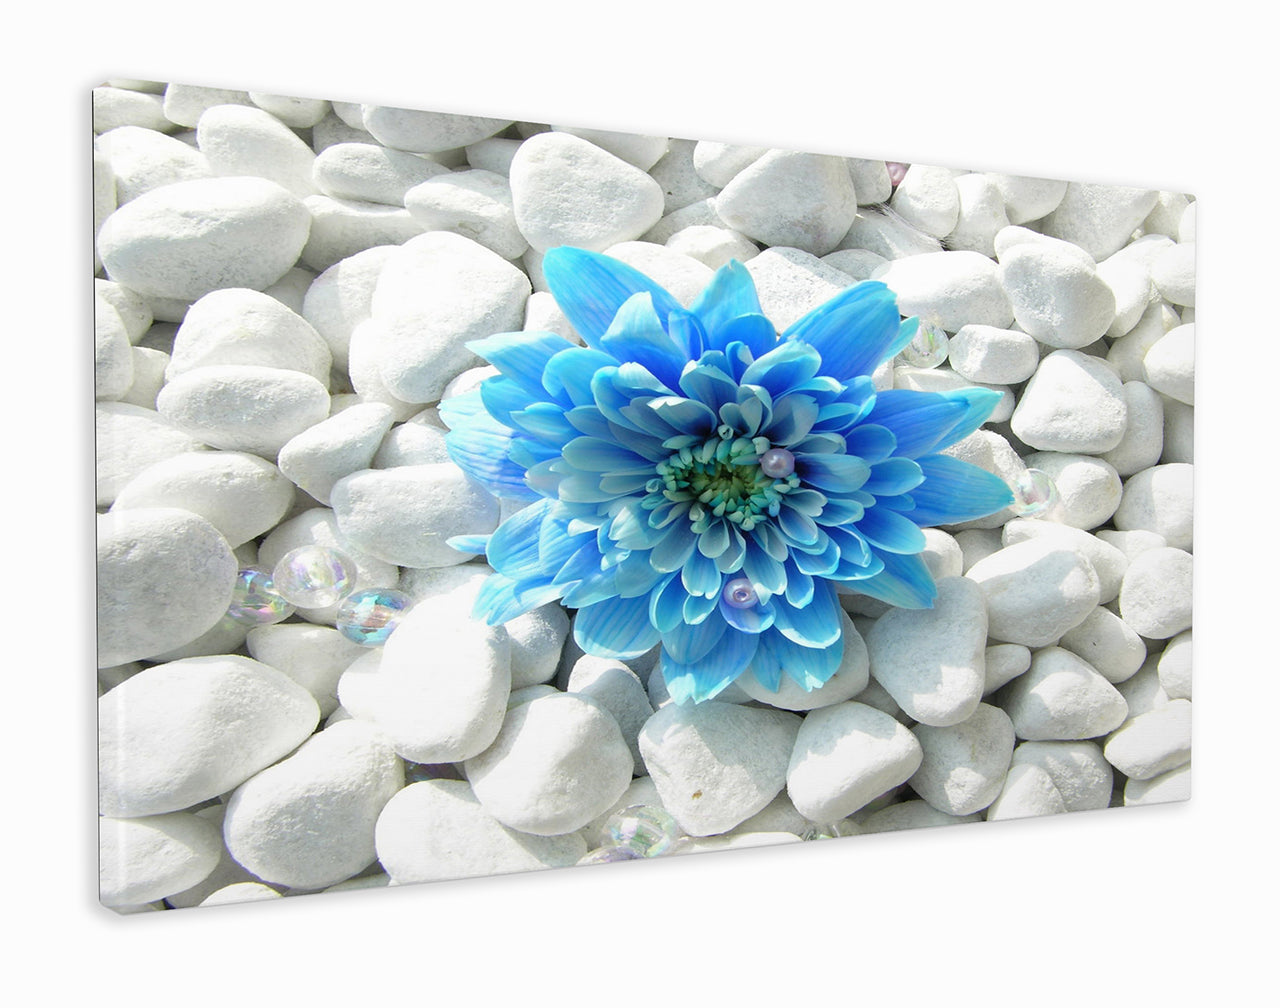 Blue flower on white pebbles